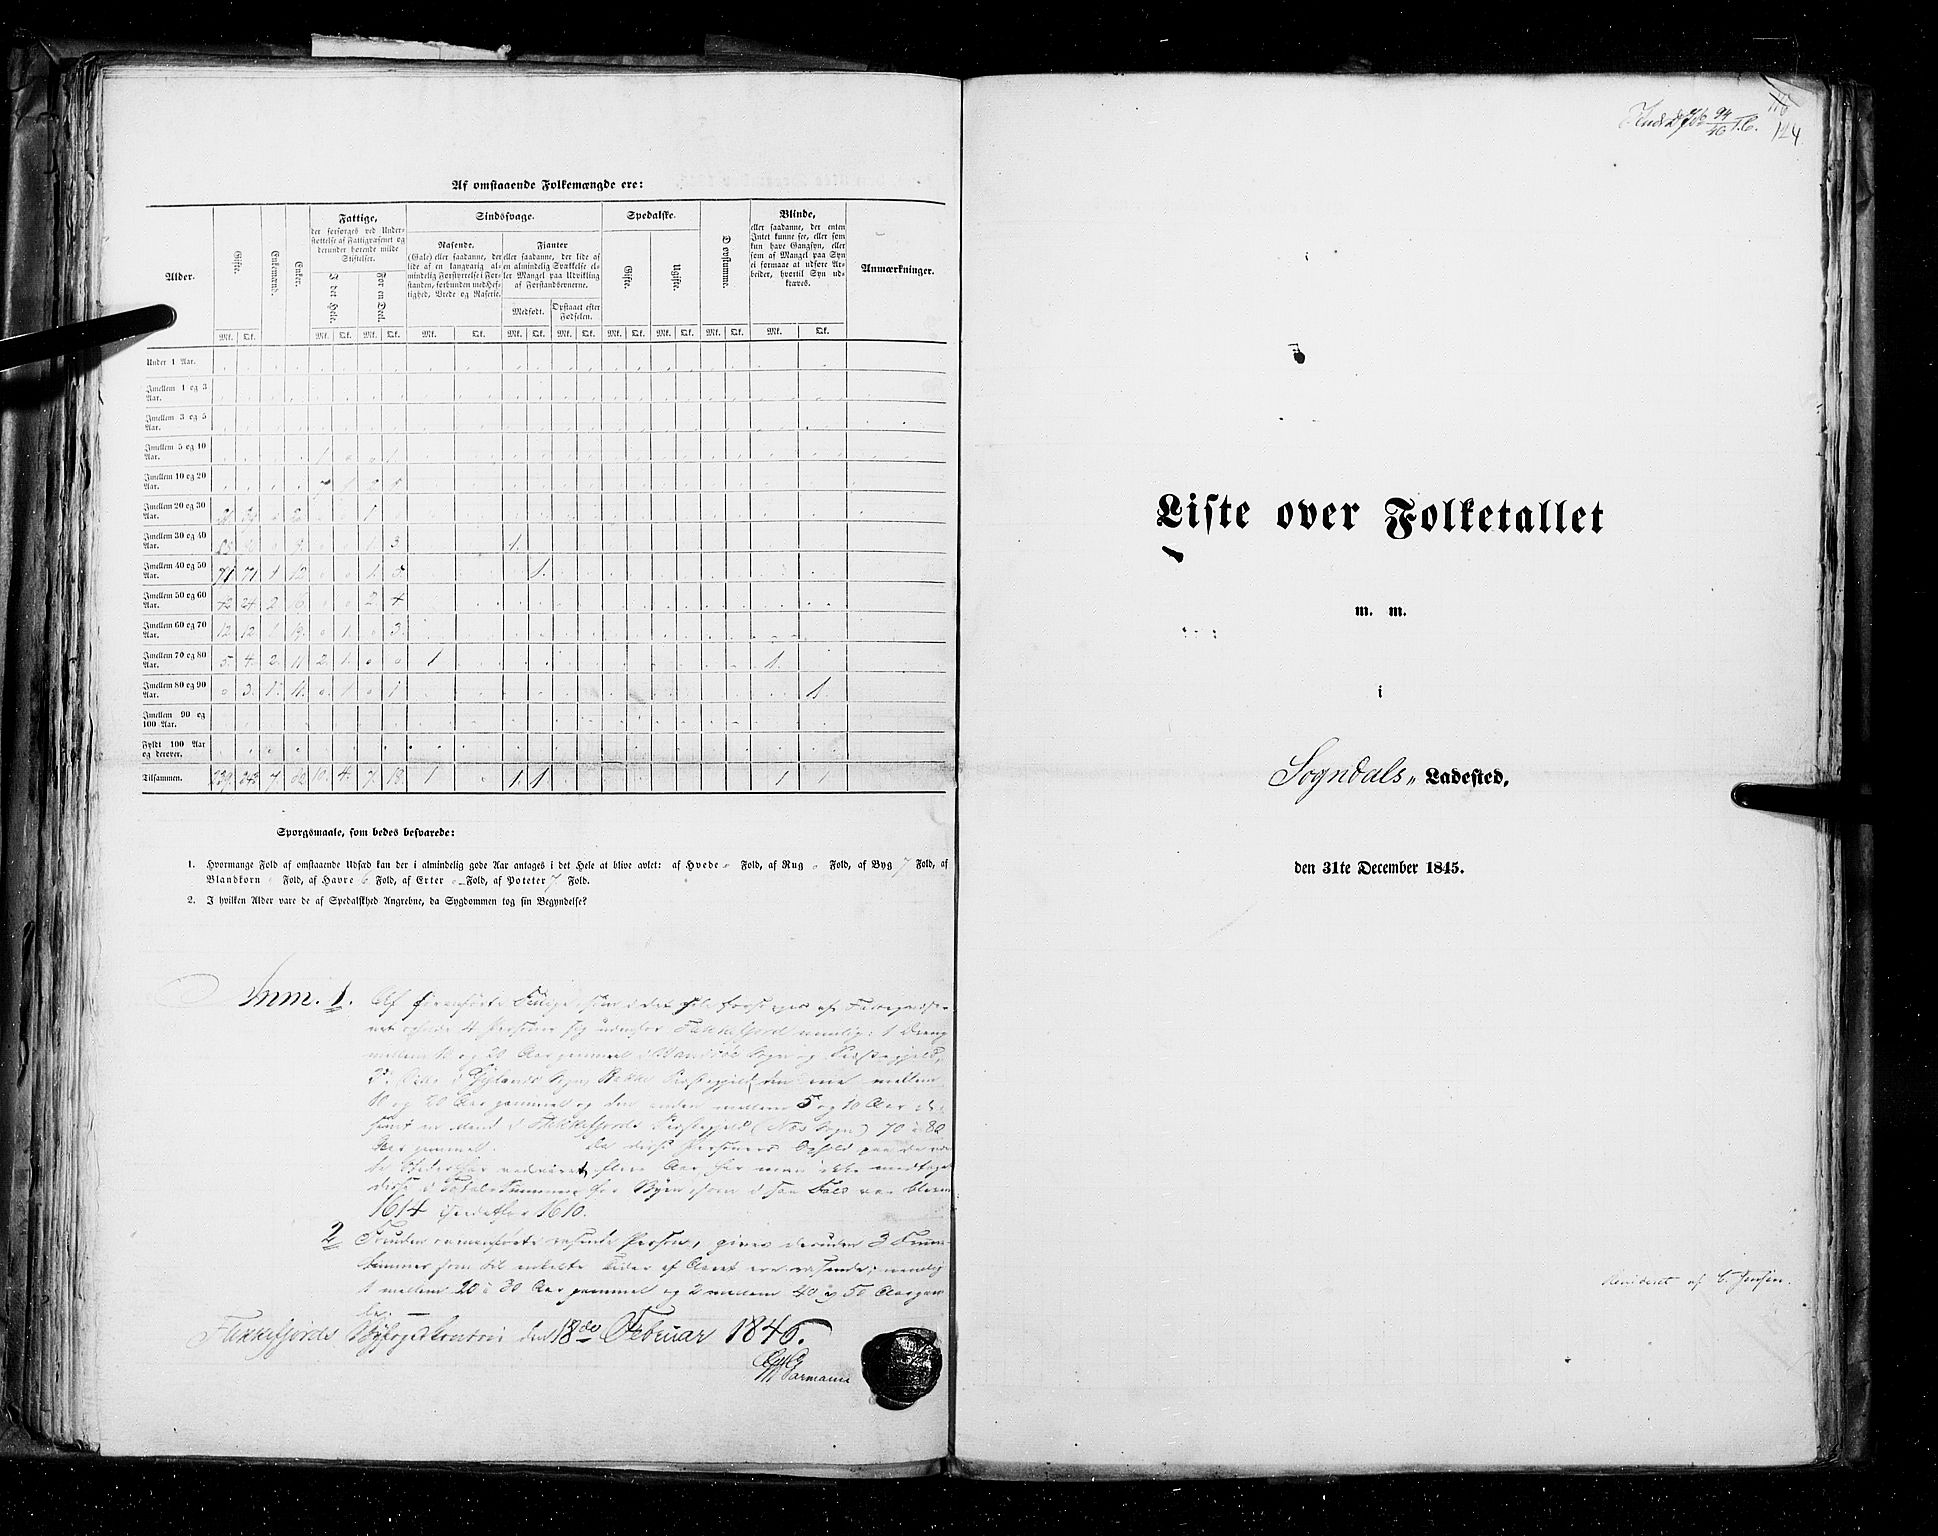 RA, Folketellingen 1845, bind 11: Kjøp- og ladesteder, 1845, s. 124